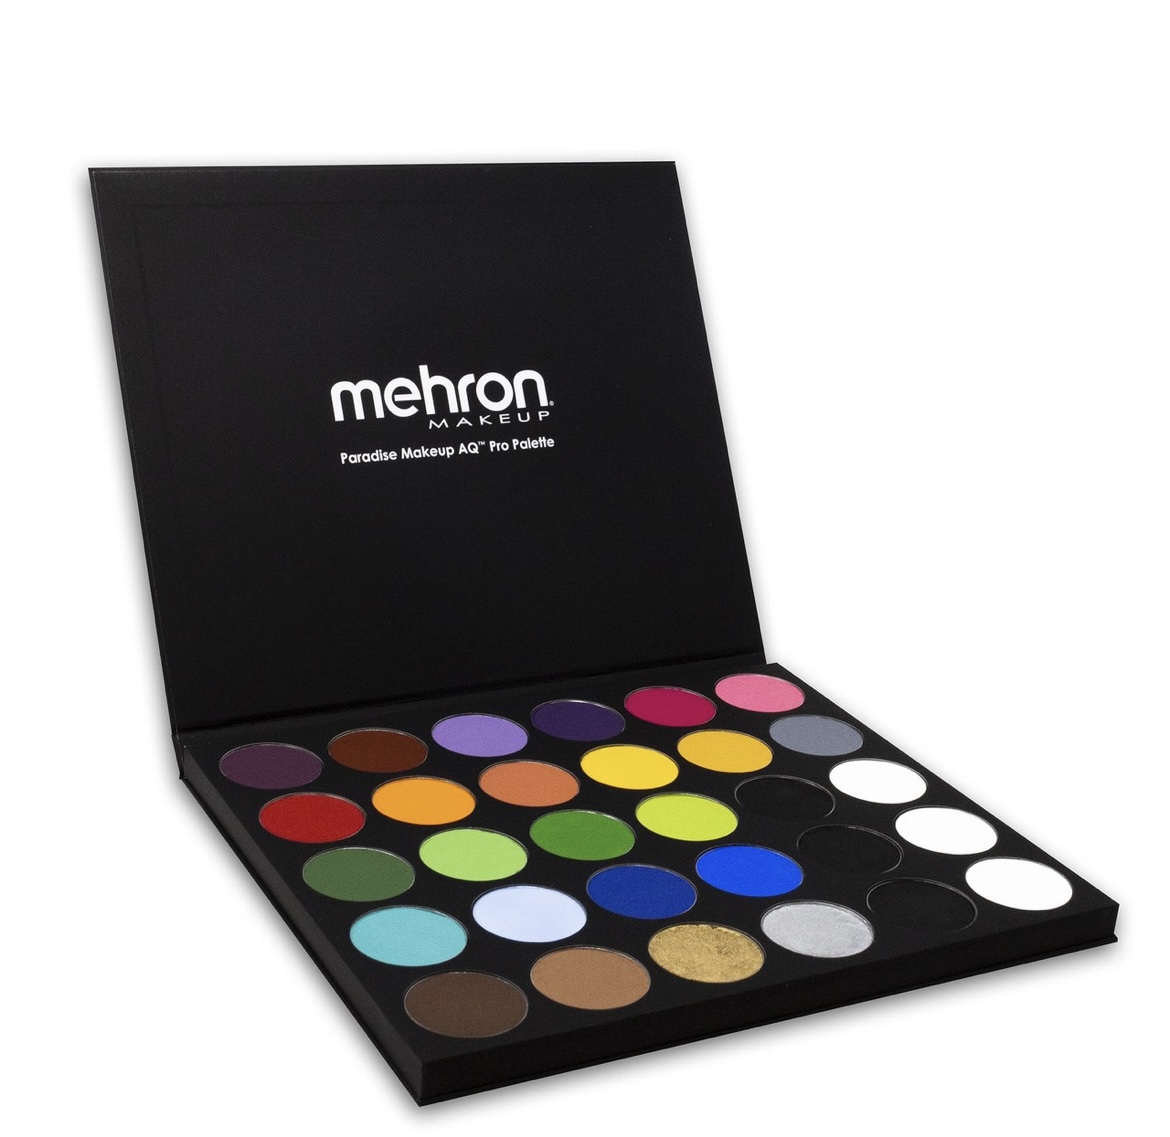 Mehron Makeup Paradise Makeup Pro Palette